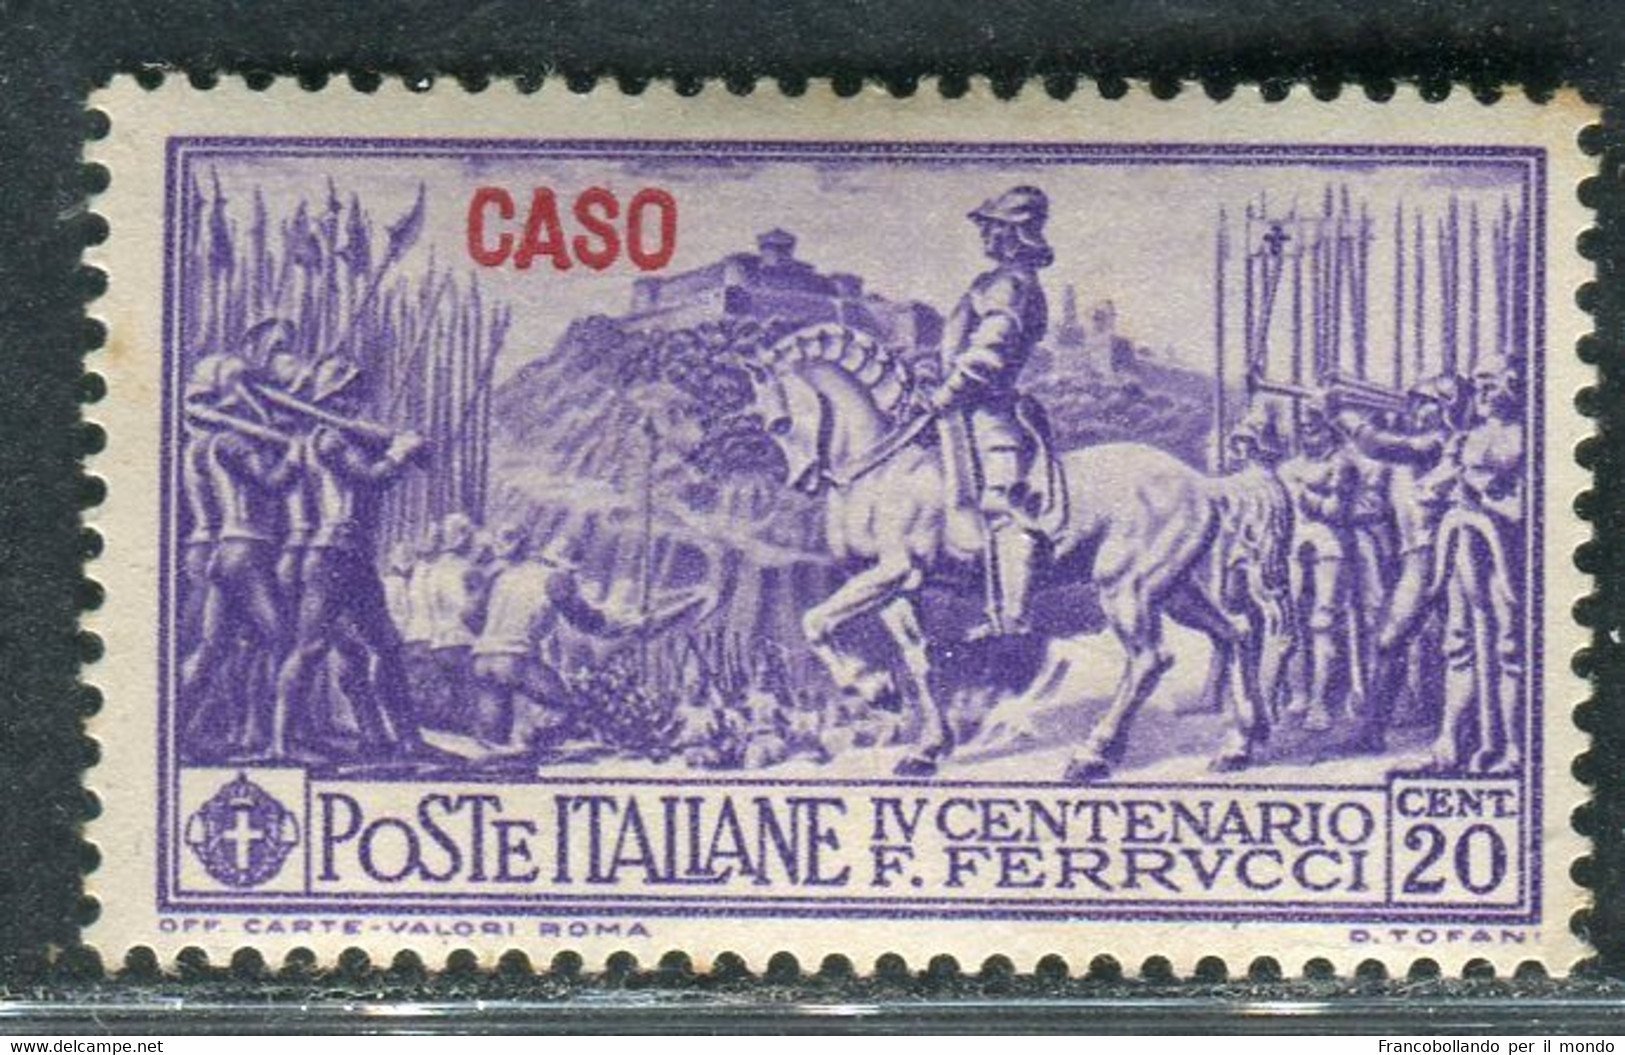 1930 Egeo Isole Caso 20 Cent Serie Ferrucci MH Sassone 12 - Egée (Lipso)